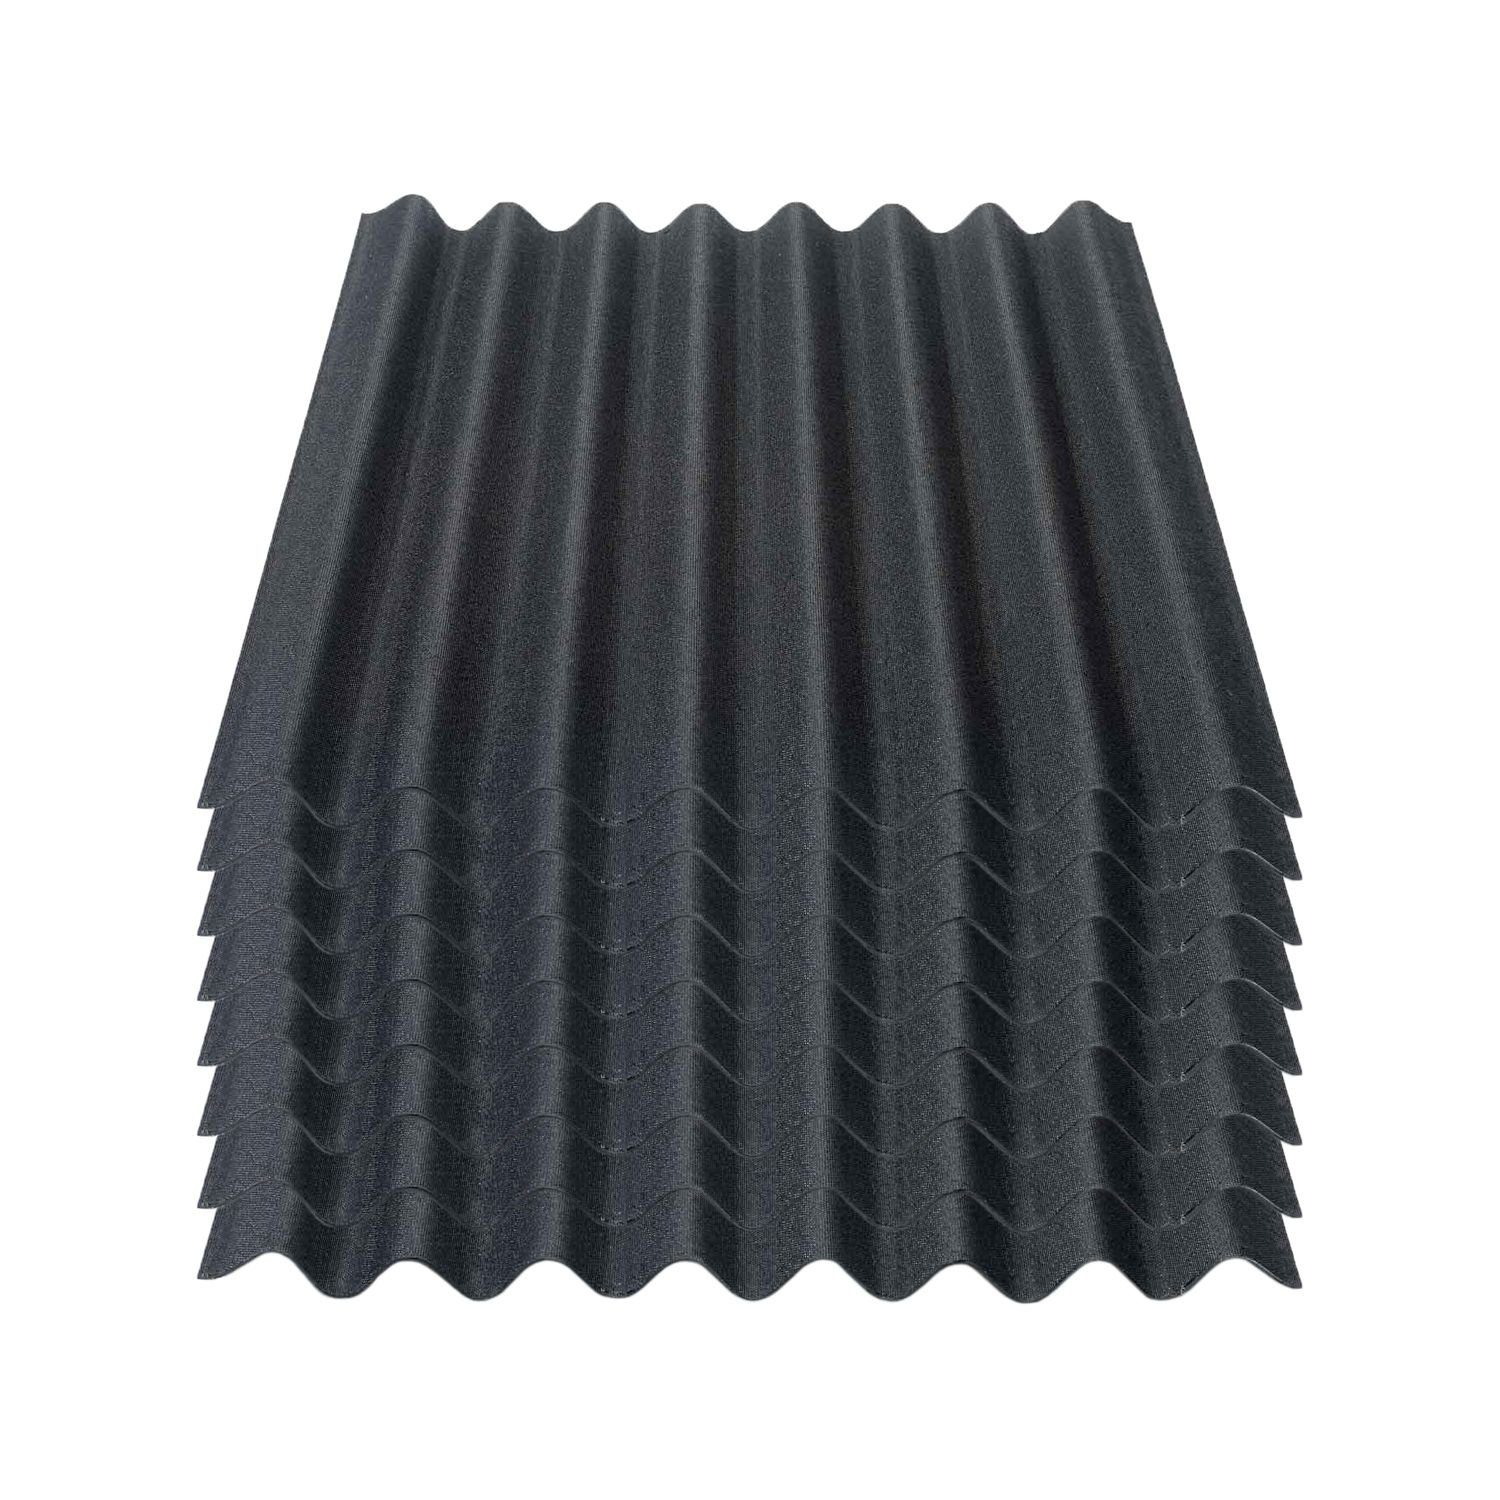 Onduline Dachpappe Onduline Easyline Dachplatte Wandplatte Bitumenwellplatten Wellplatte 8x0,76m² - schwarz, wellig, 6.08 m² pro Paket, (8-St)